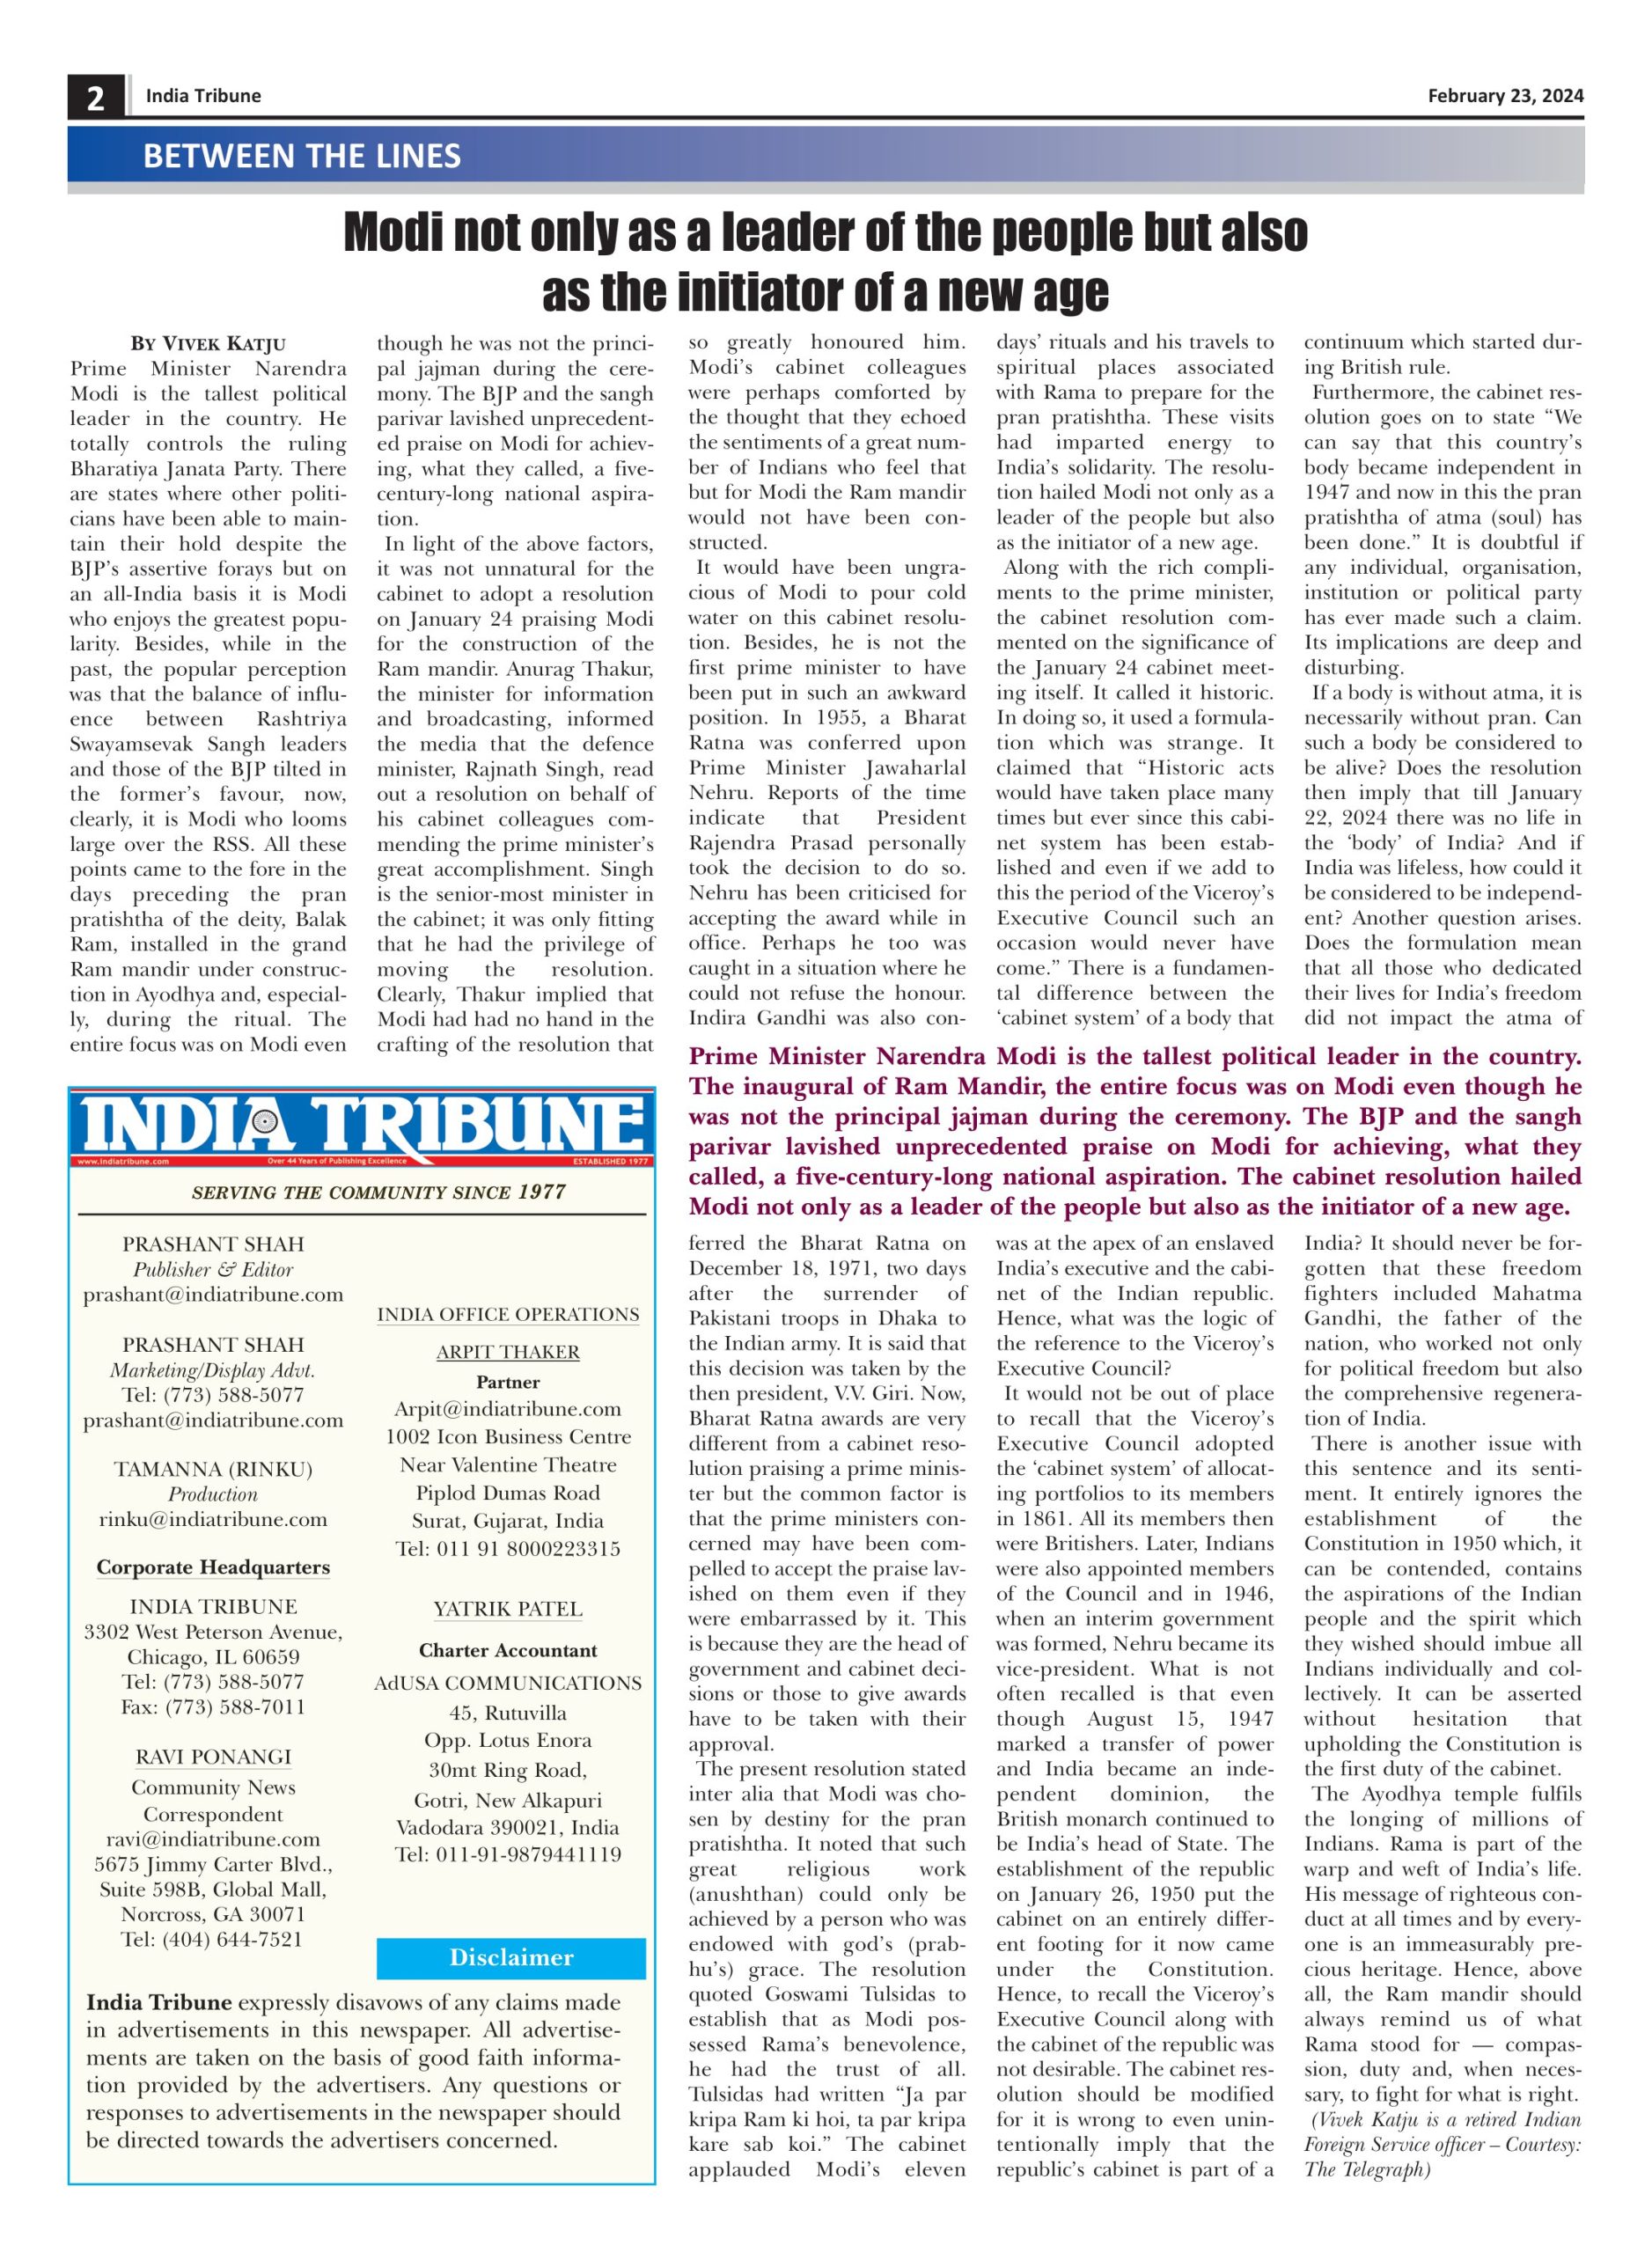 India Tribune Four